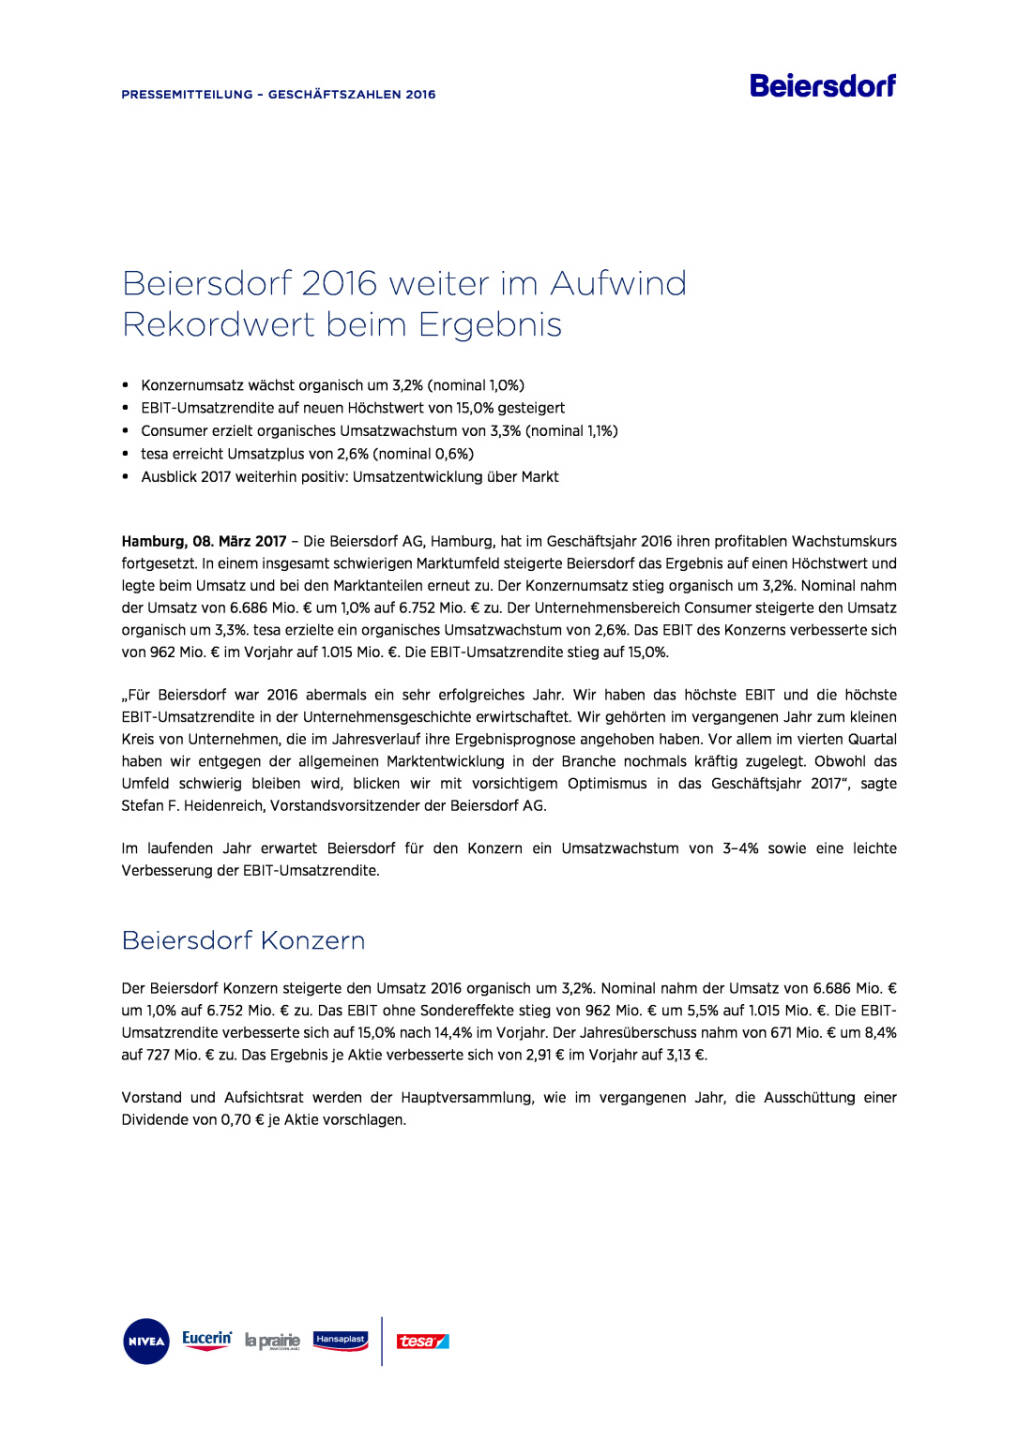 Beiersdorf Geschäftszahlen 2016, Seite 1/4, komplettes Dokument unter http://boerse-social.com/static/uploads/file_2146_beiersdorf_geschaftszahlen_2016.pdf